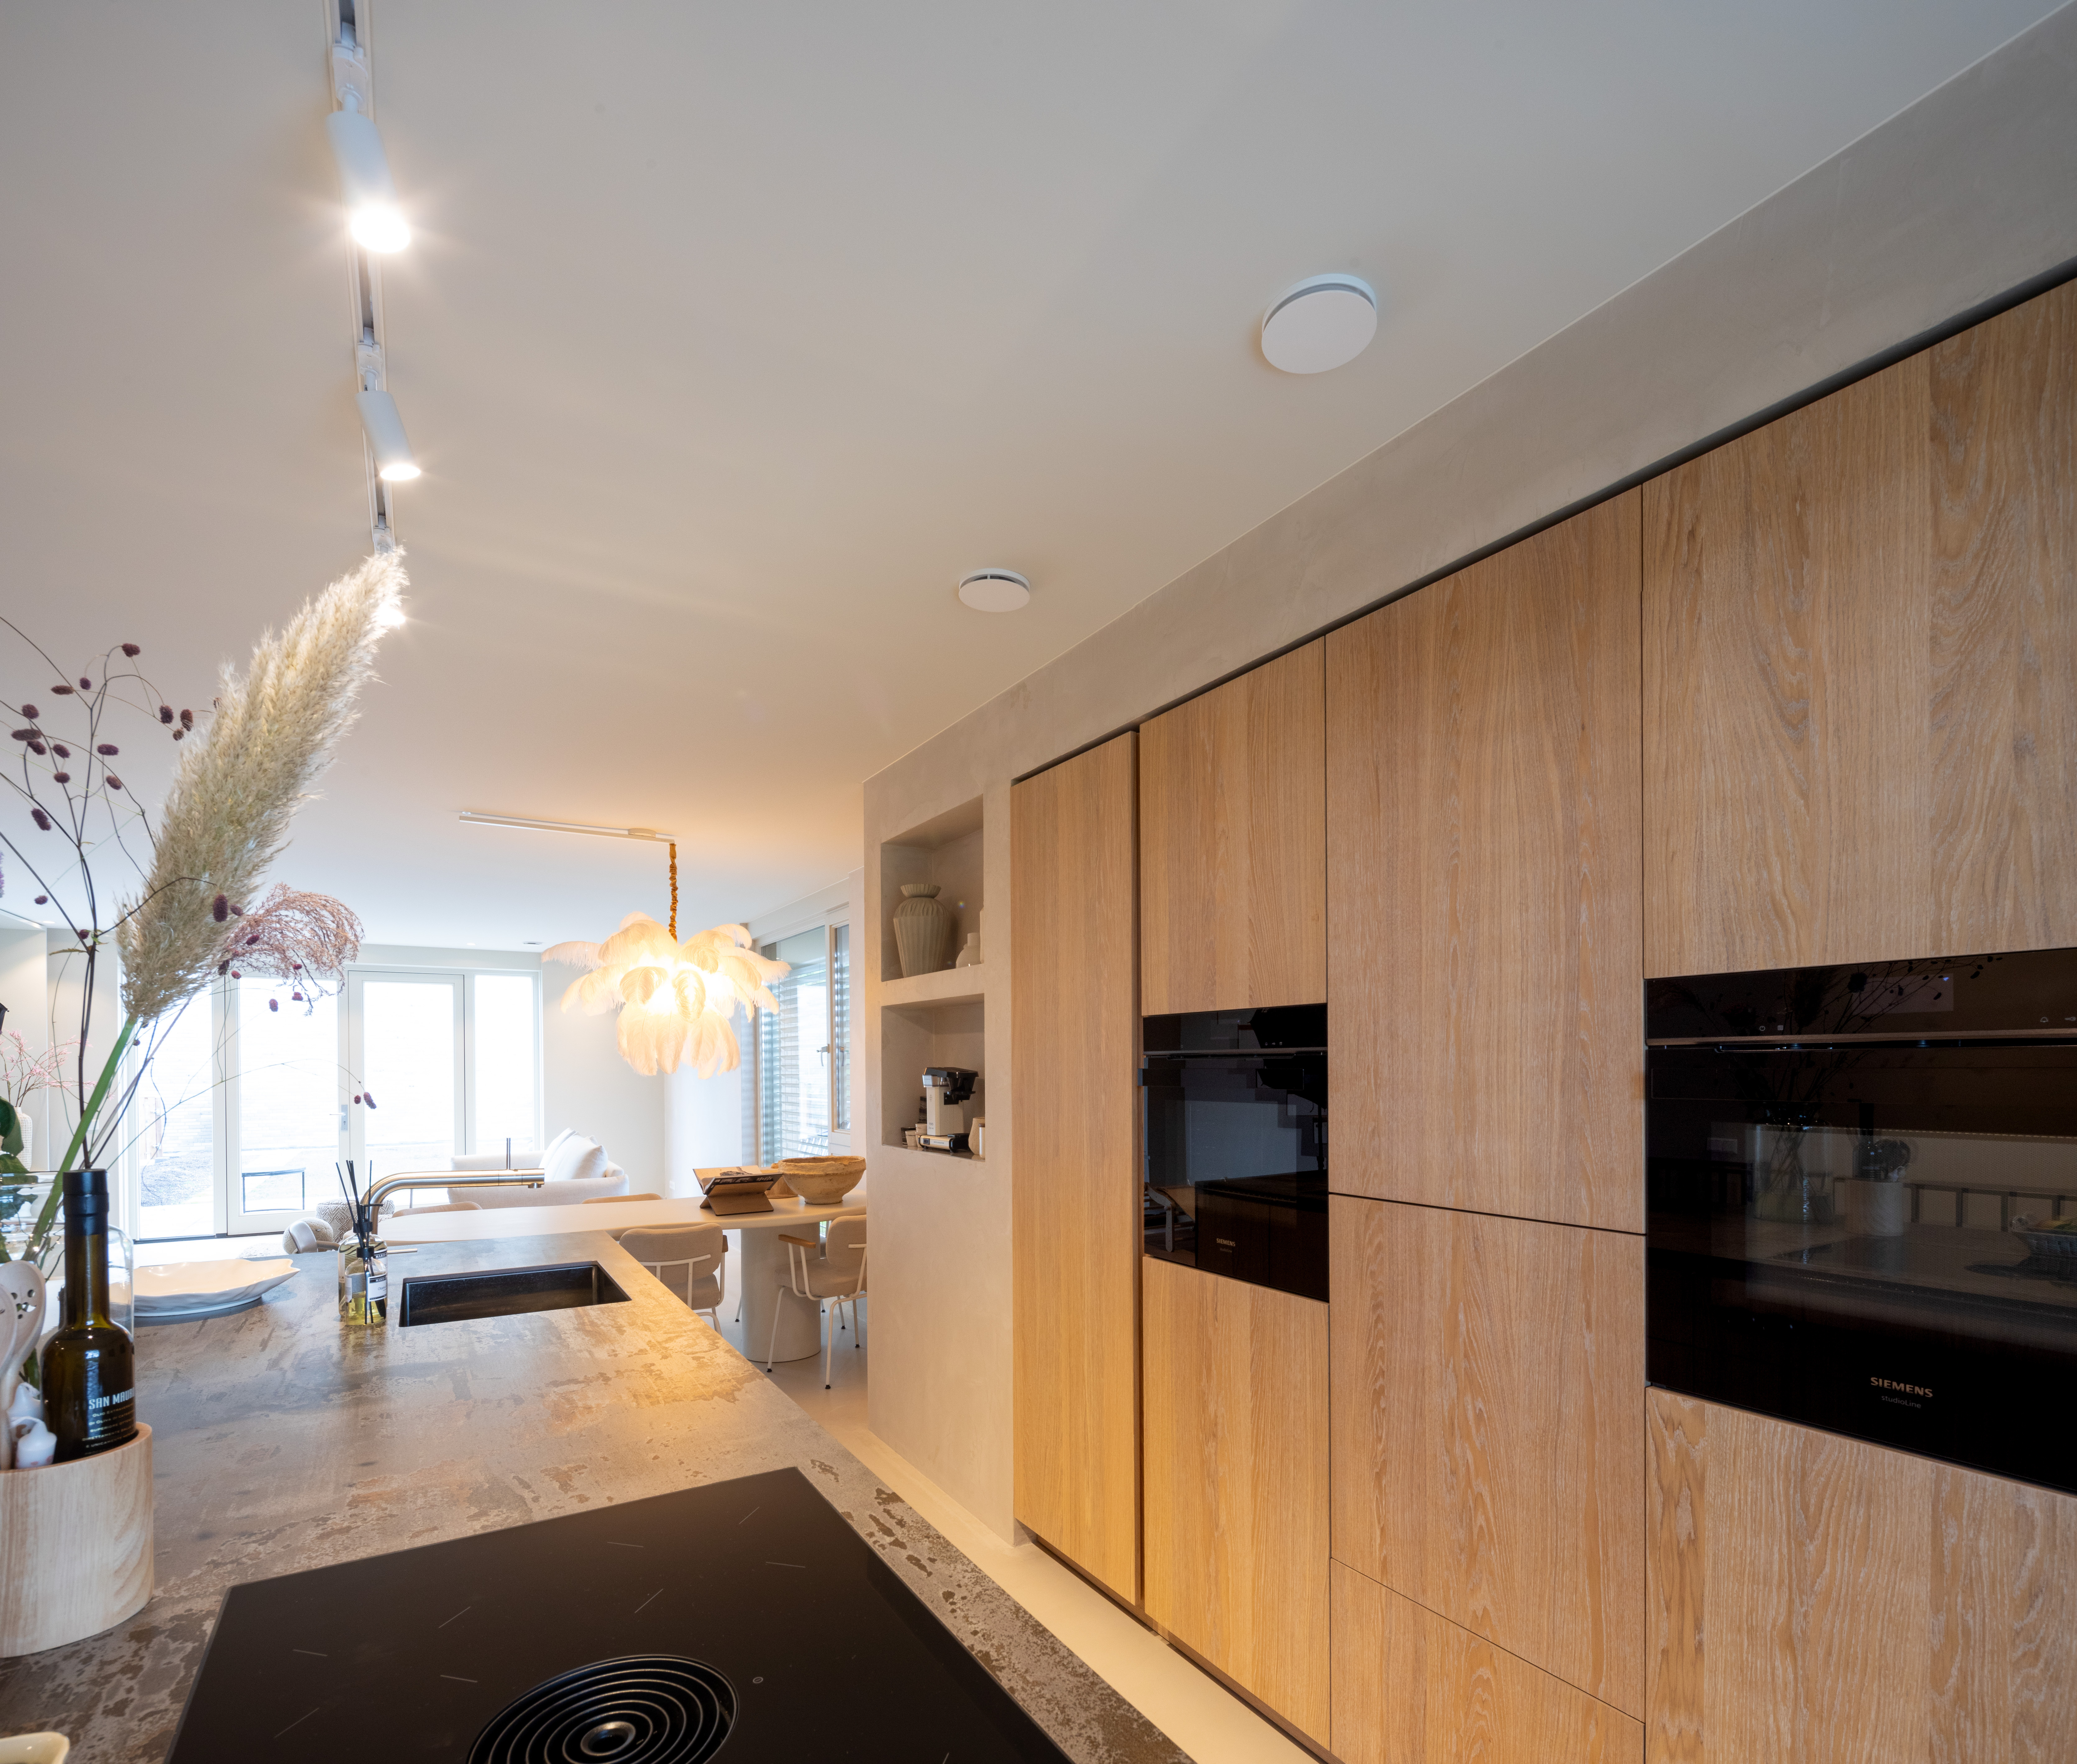 Keuken met spanplafond en verlichting